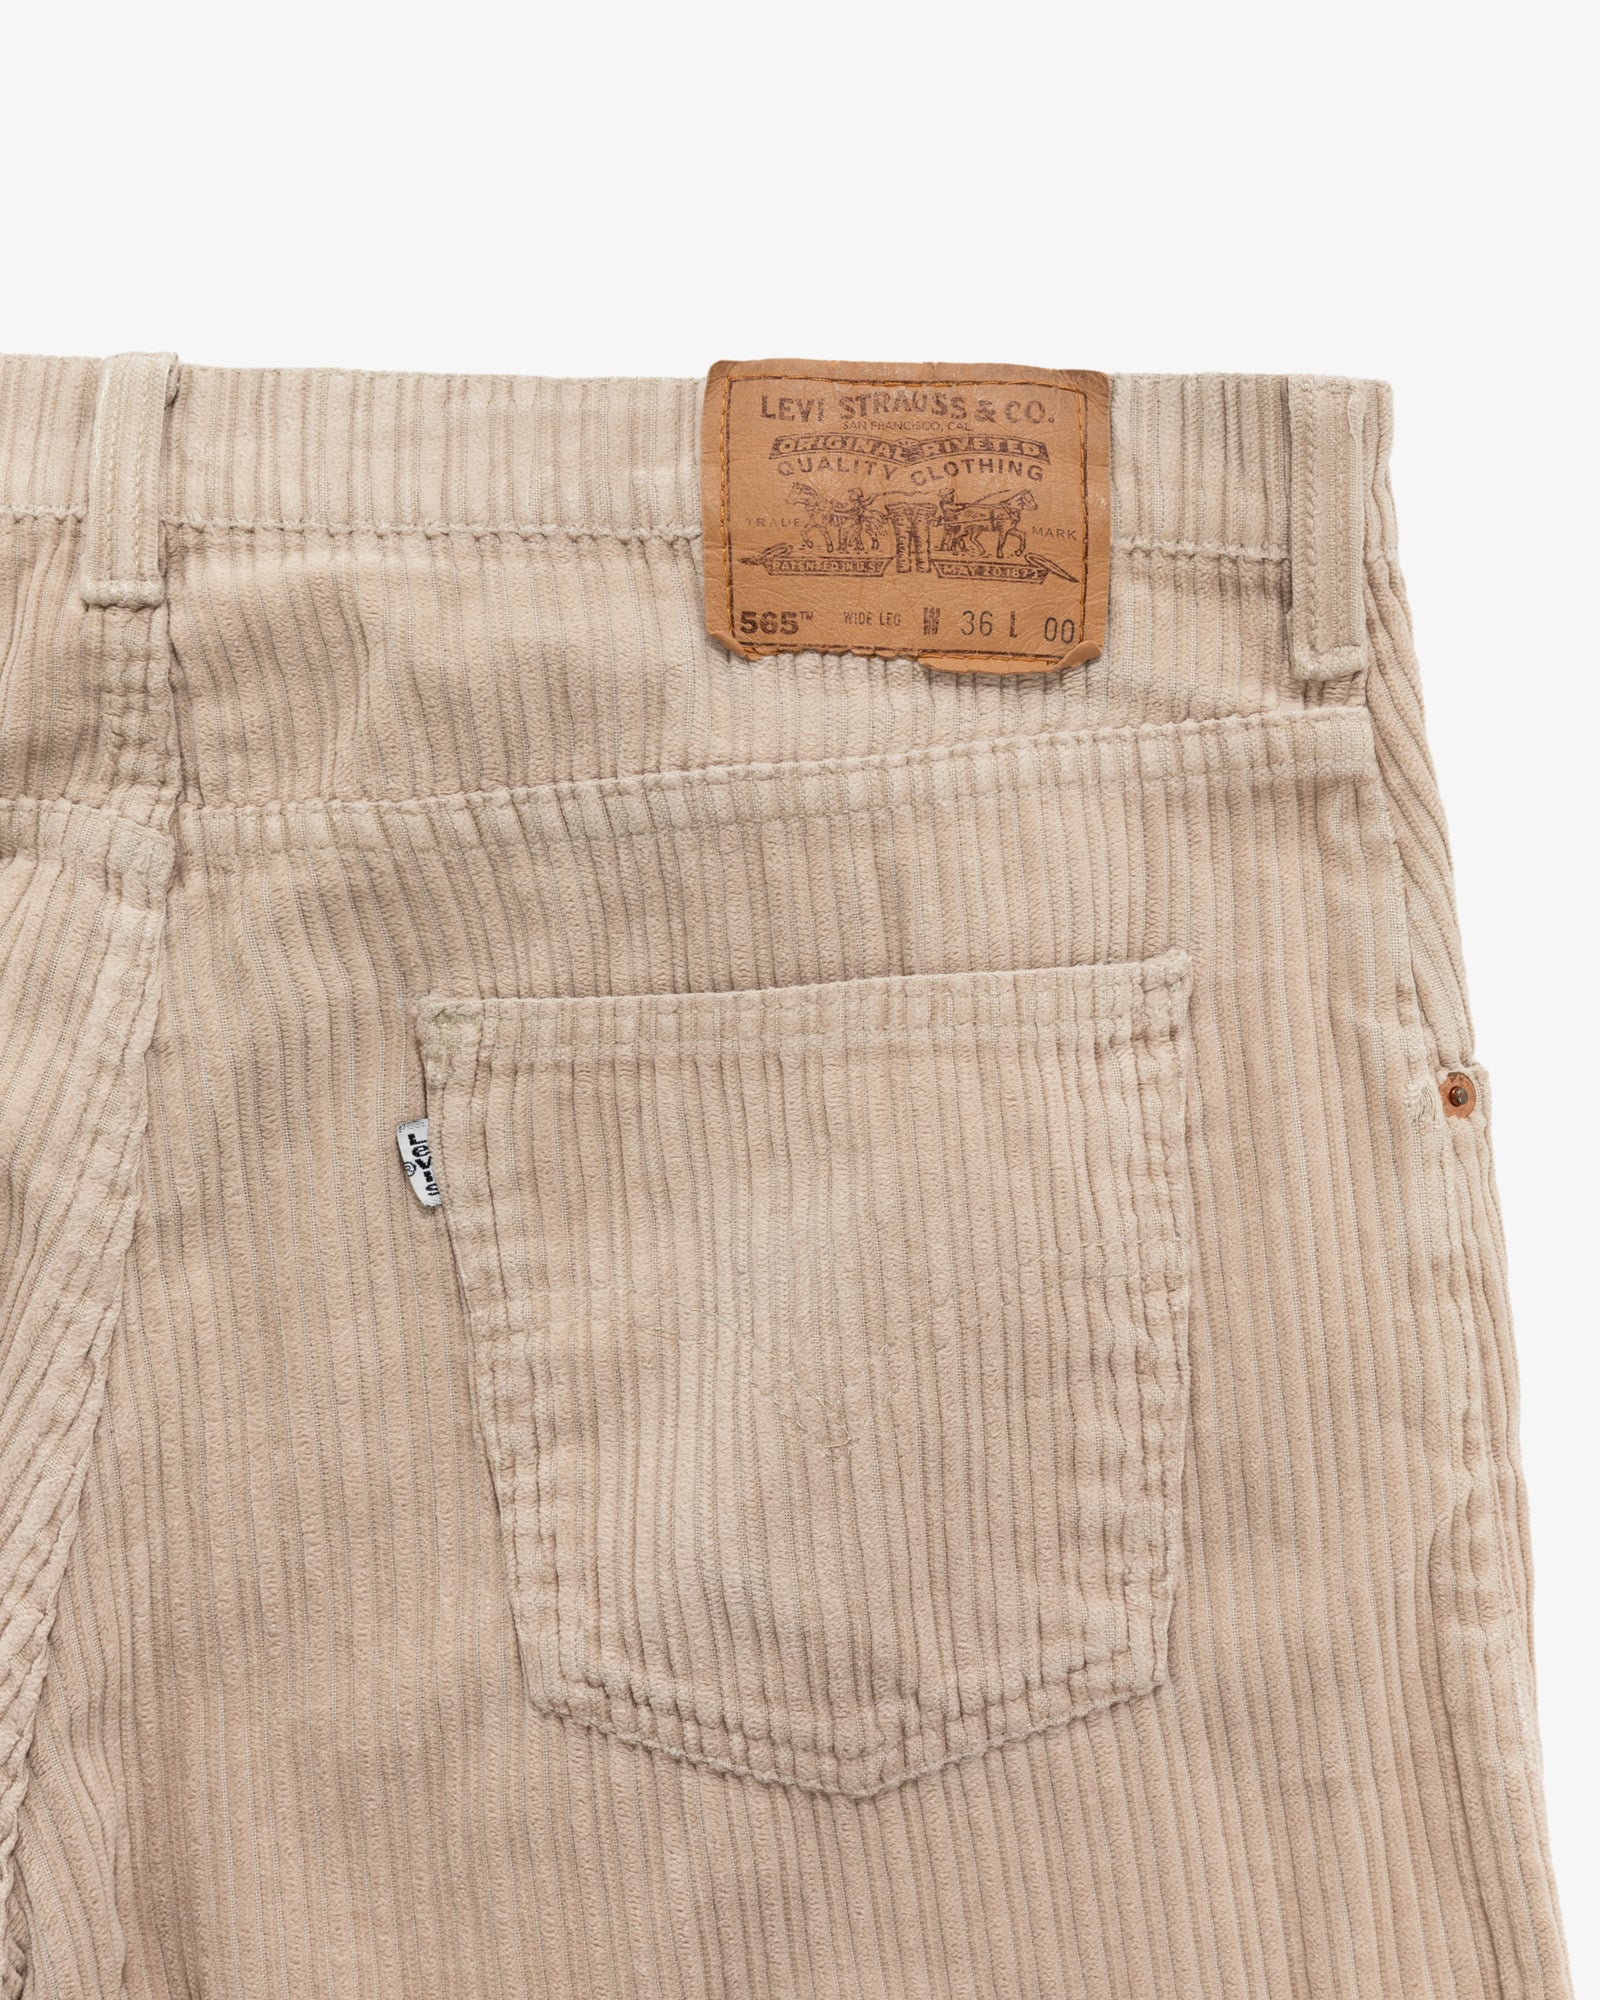 Vintage Levi's 565 Shorts